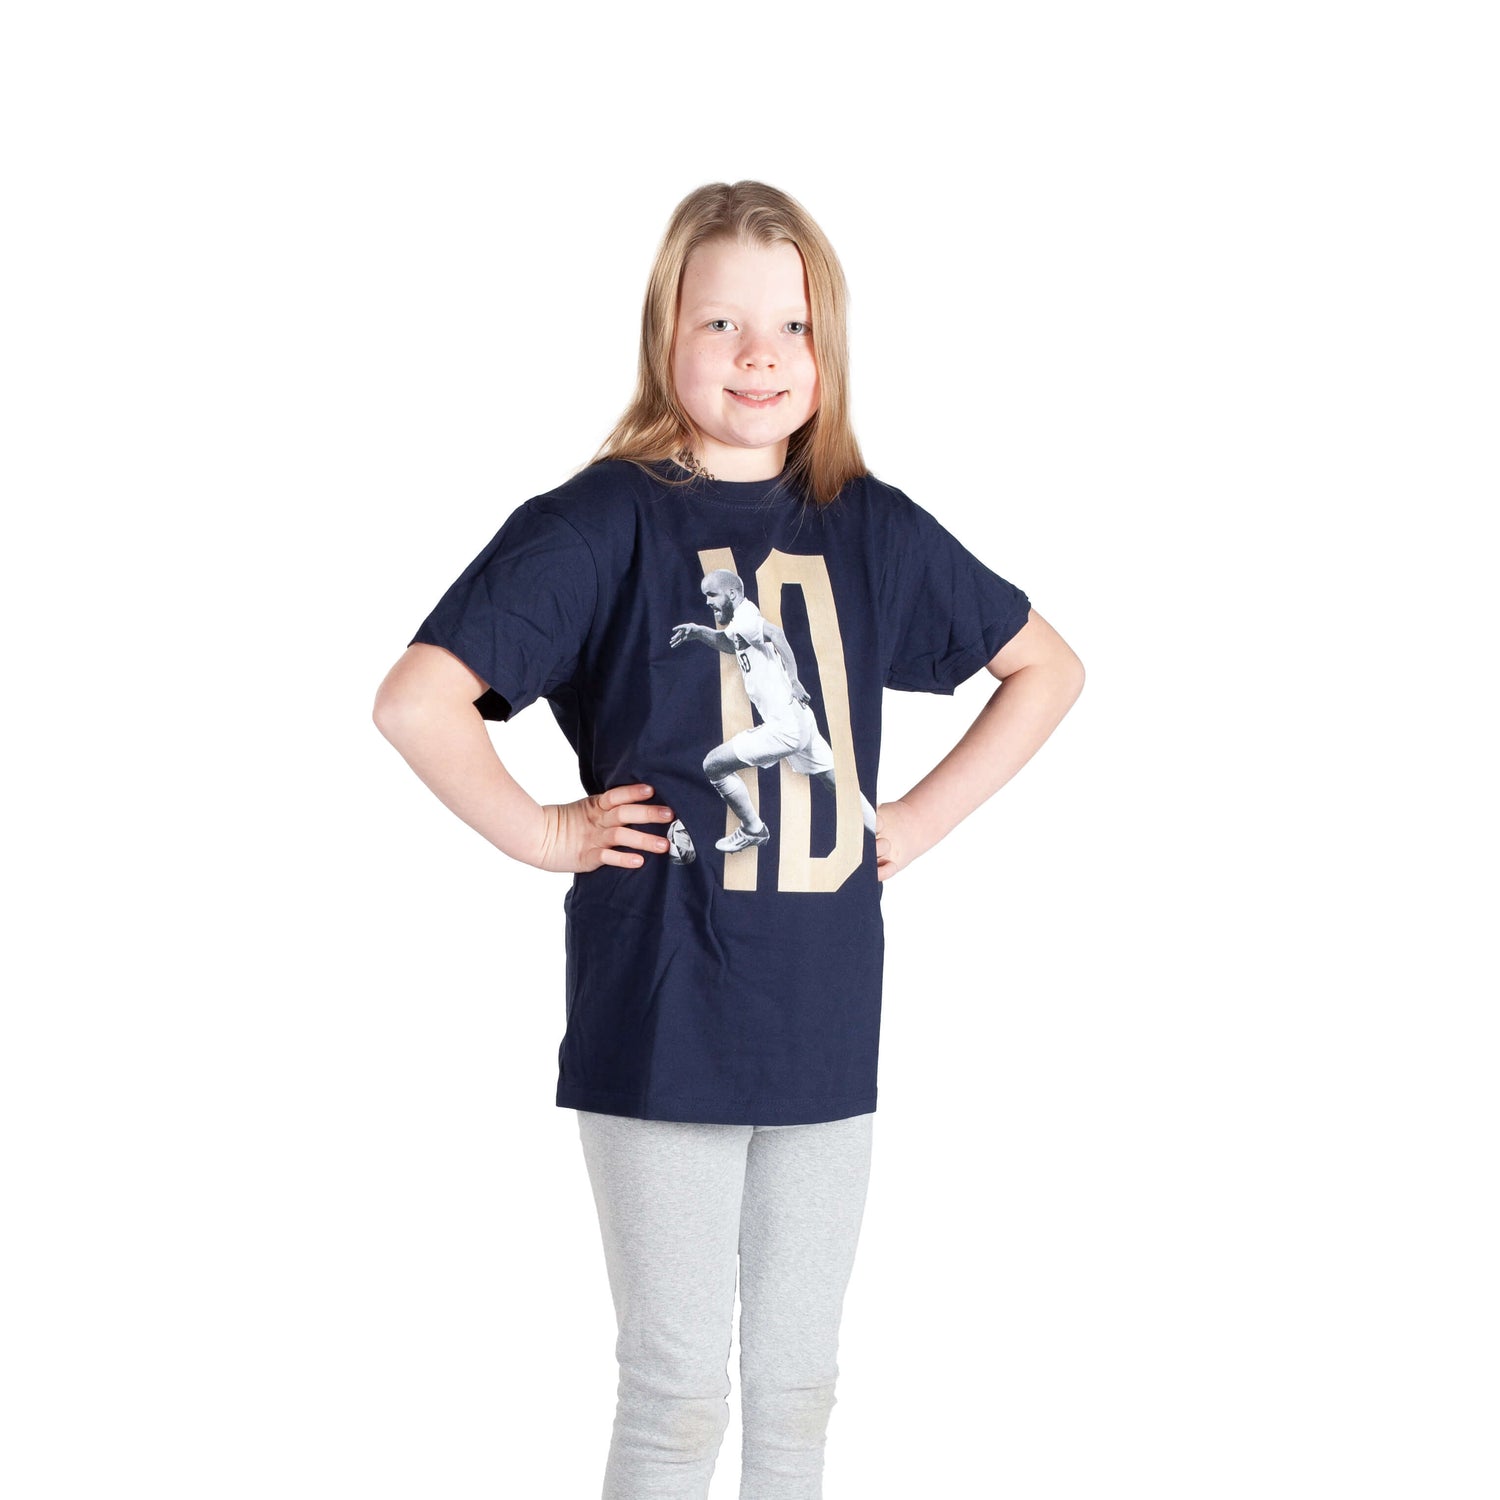 Teemu Pukki #10 fan shirt, Navy blue, Kids